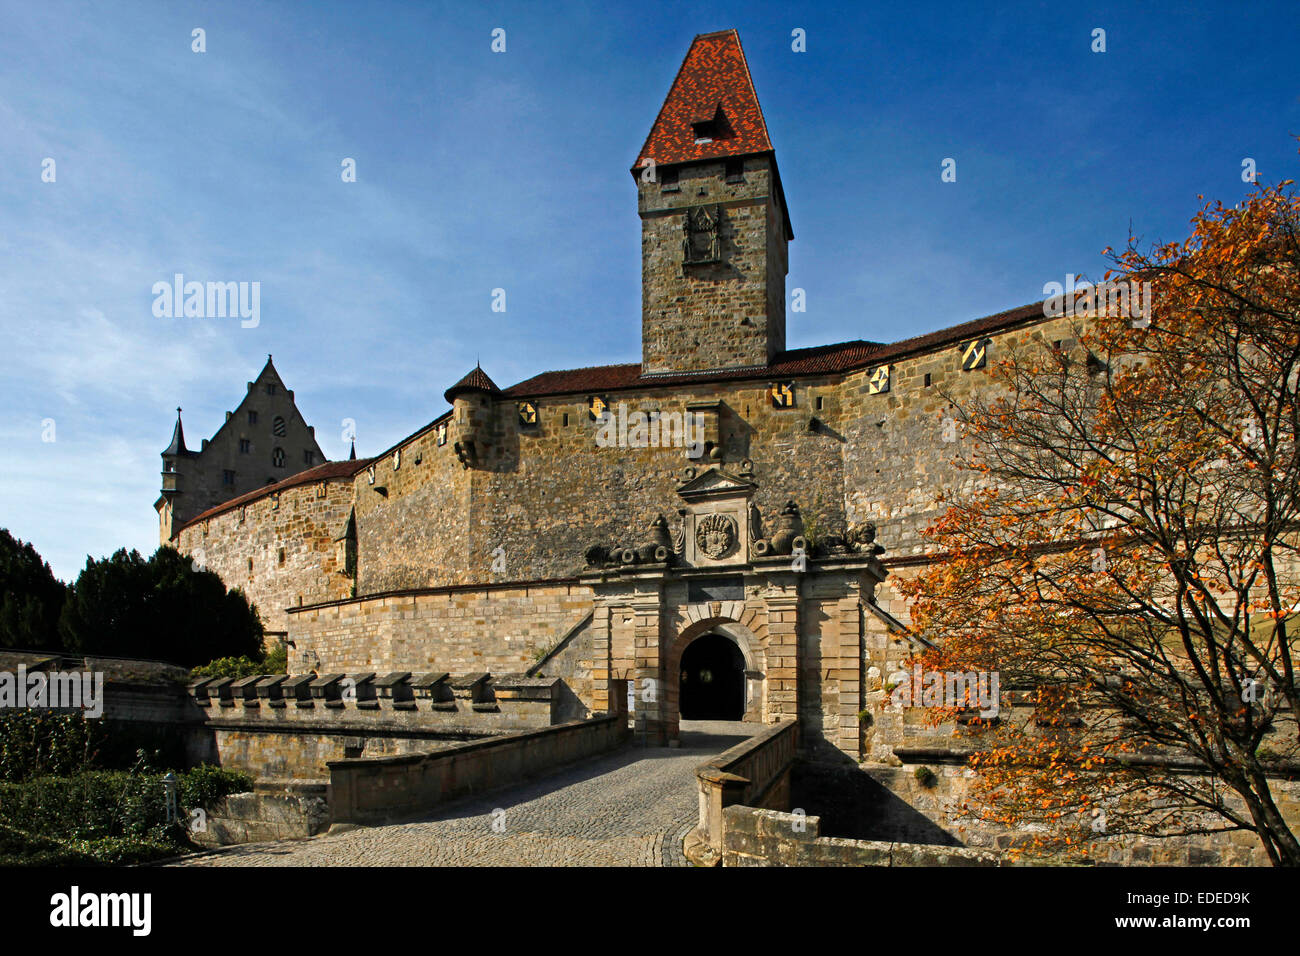 El Veste Coburg, Coburg o fortaleza, construida del siglo 10, es uno de los  castillos más grandes de Alemania. Está situado en una colina sobre la  ciudad de Coburgo. El Veste Coburg (